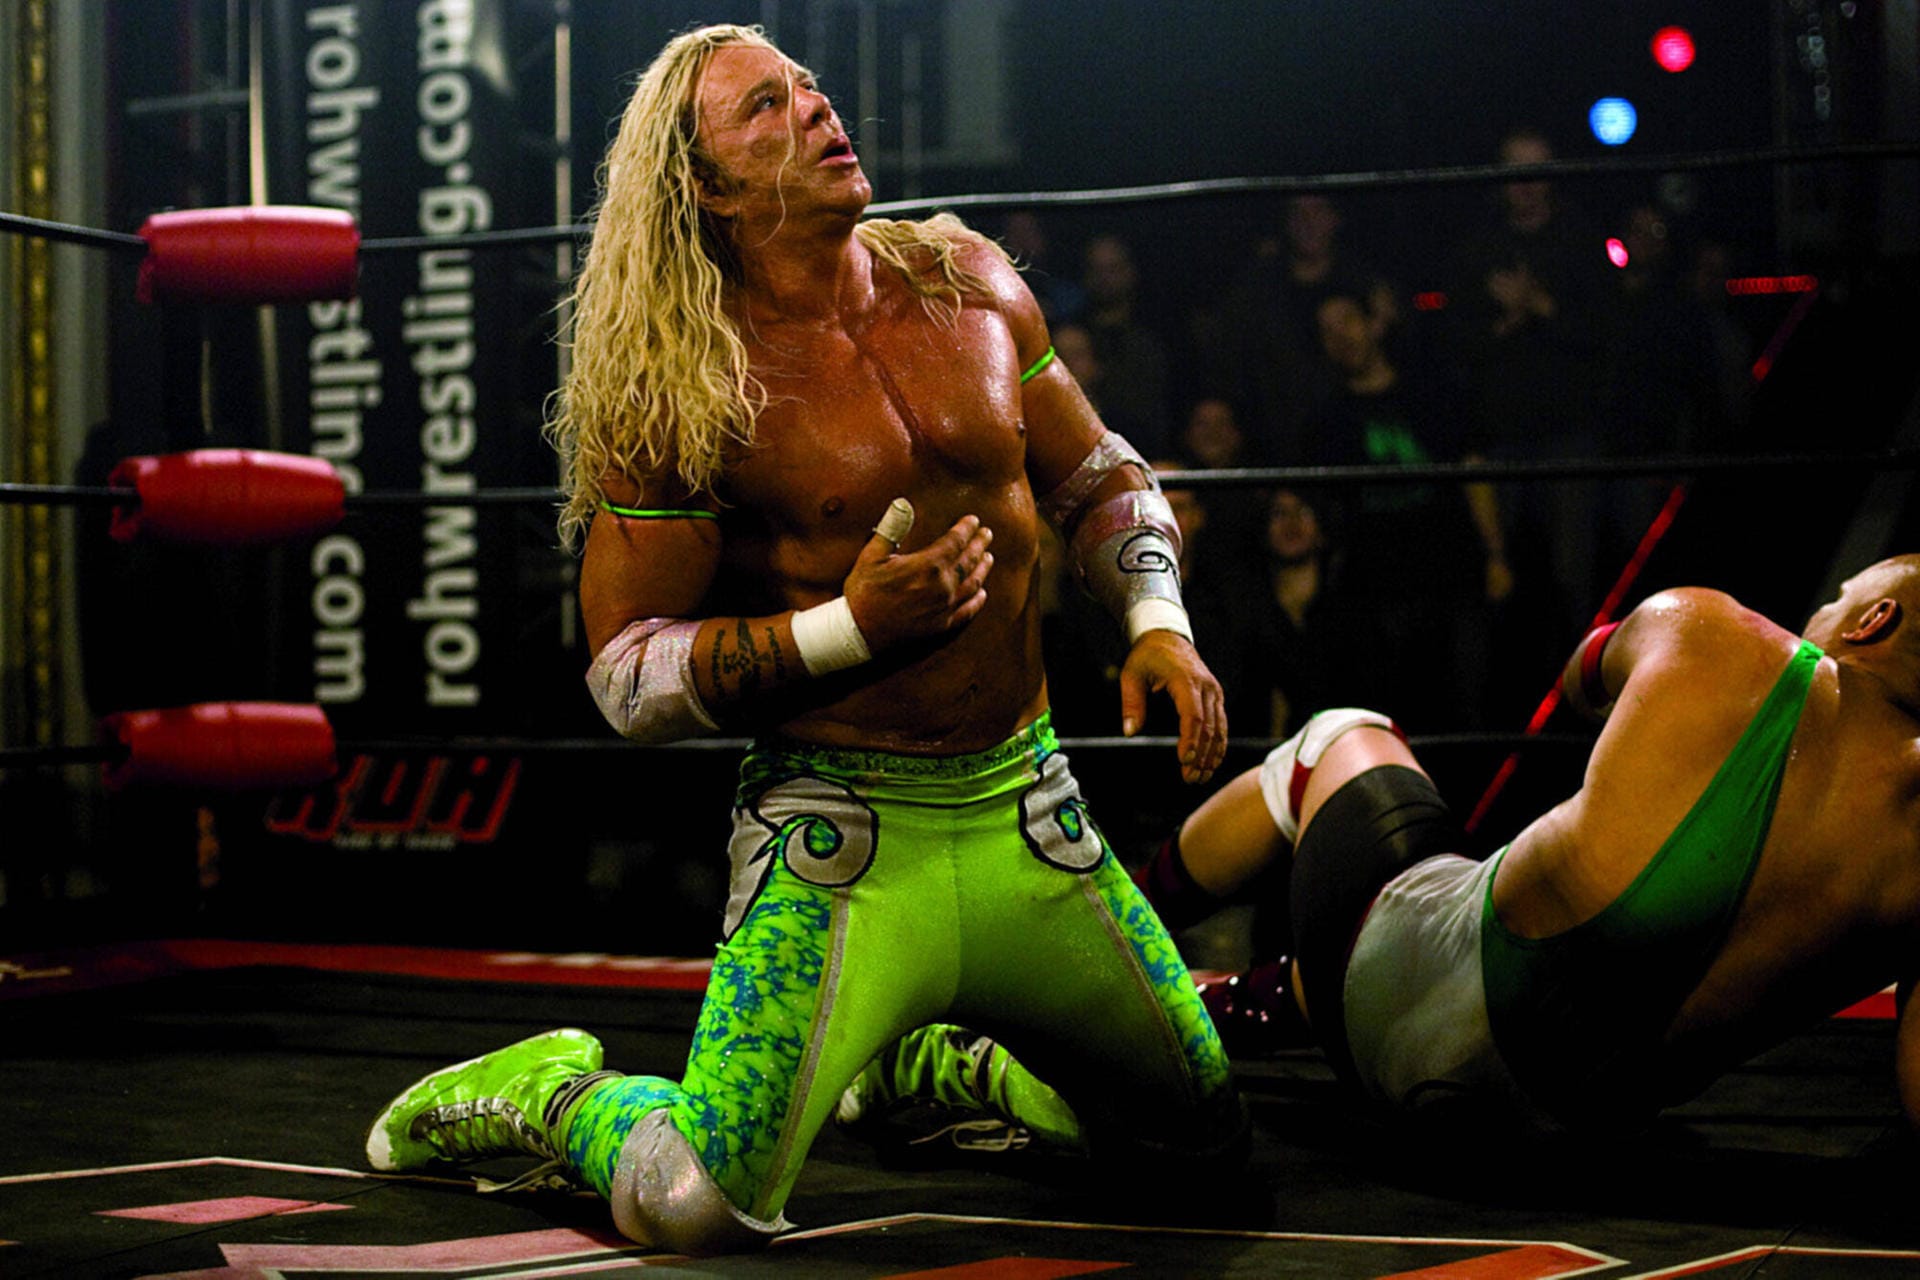 Platz 15: The Wrestler (Wrestling, 2008, 2,5 Prozent – 150 Stimmen)